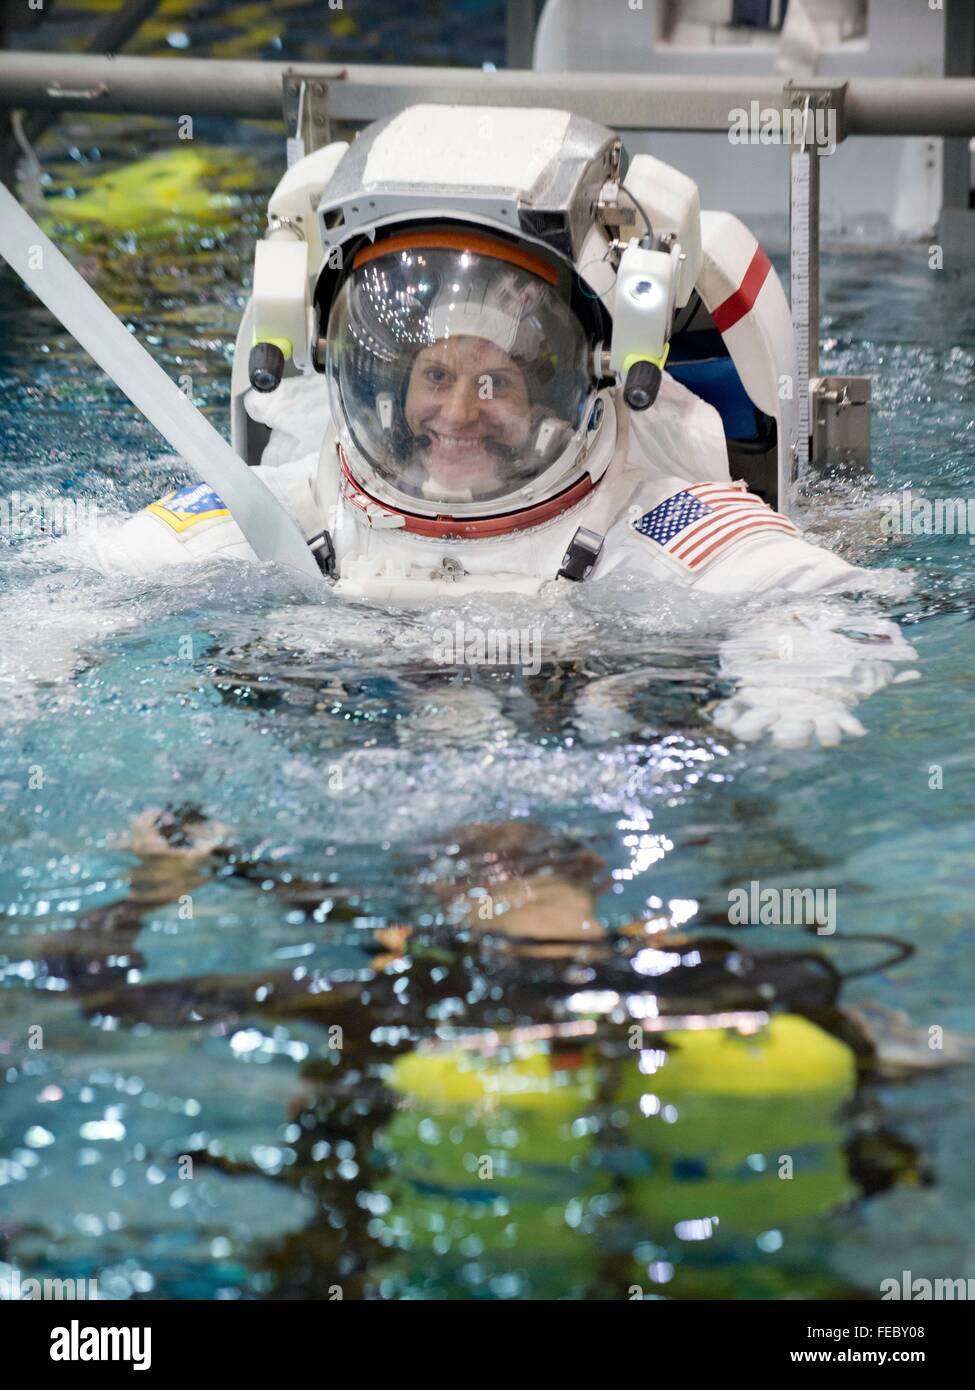 L'astronaute de la NASA Kate Rubins durant la formation avec l'EVA spacesuit dans le bassin au Centre spatial Johnson NBL 23 octobre 2015 à Houston, Texas. Rubins lancera avec le cosmonaute russe Anatoly Ivanishin et astronaute de l'Agence japonaise d'exploration aérospatiale Takuya Onishi à la Station spatiale internationale comme l'équipage Expedition 48/49 le 21 juin 2016. Banque D'Images